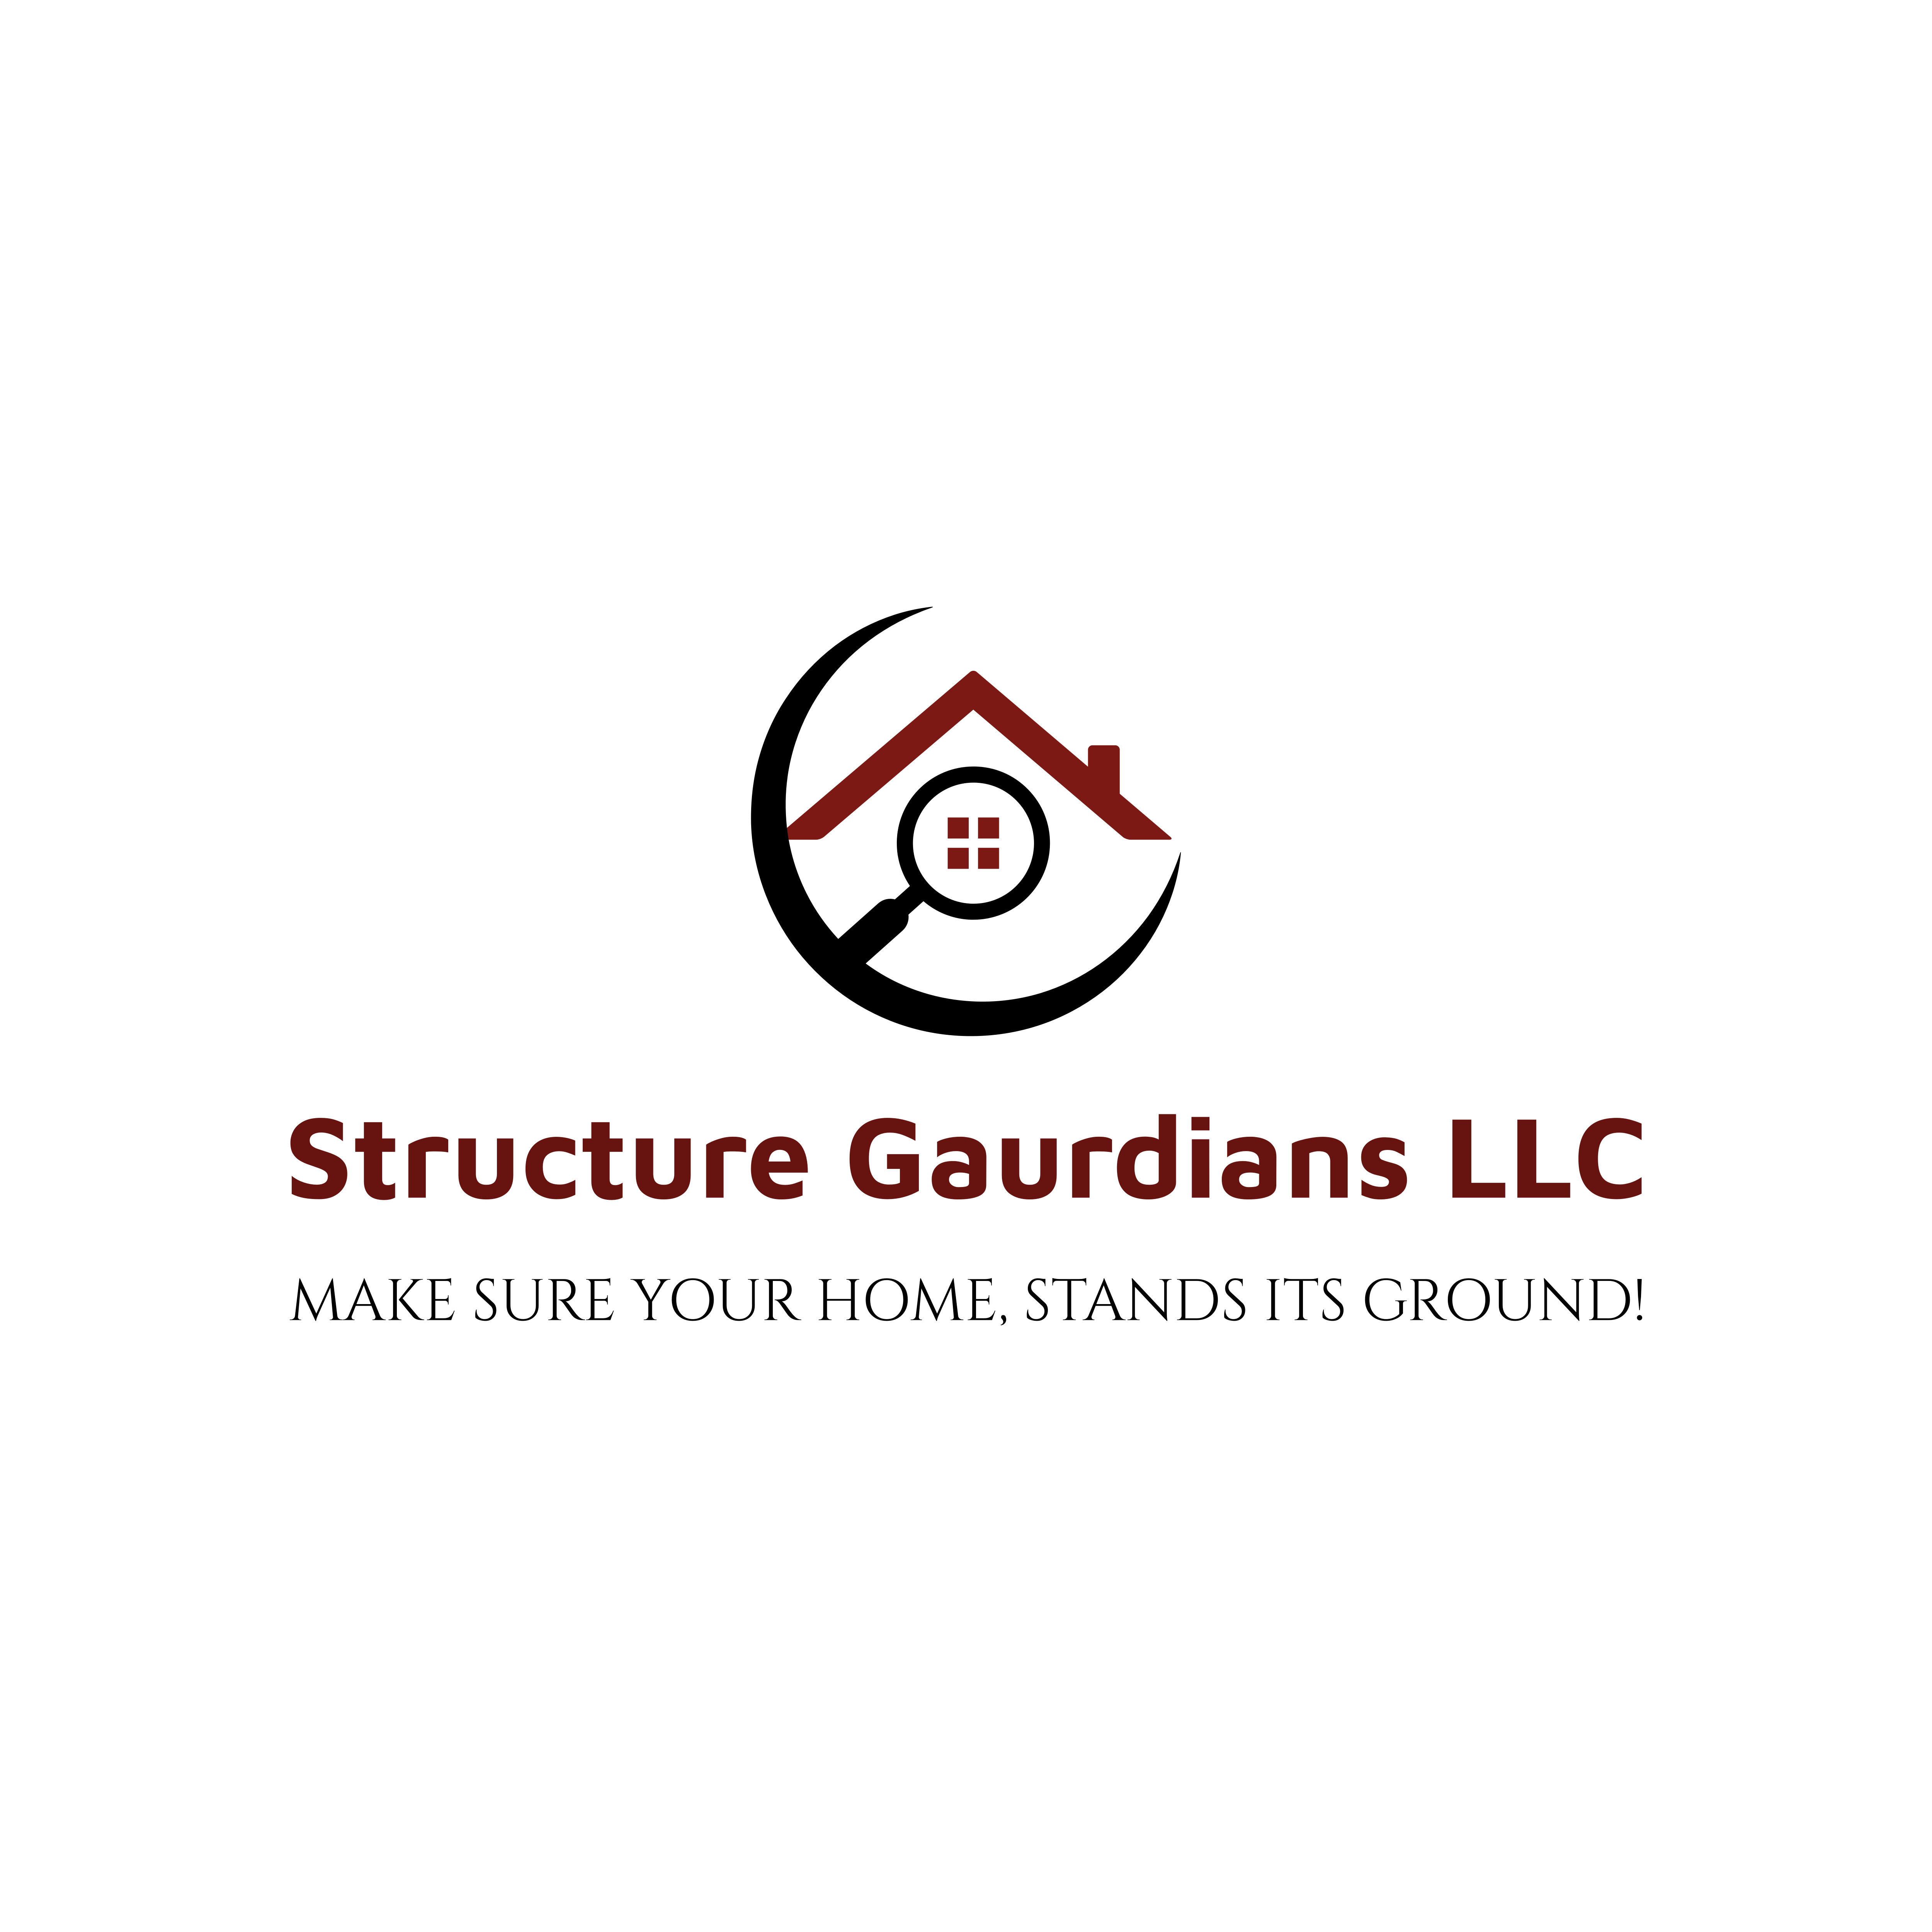 Structure Guardians LLC